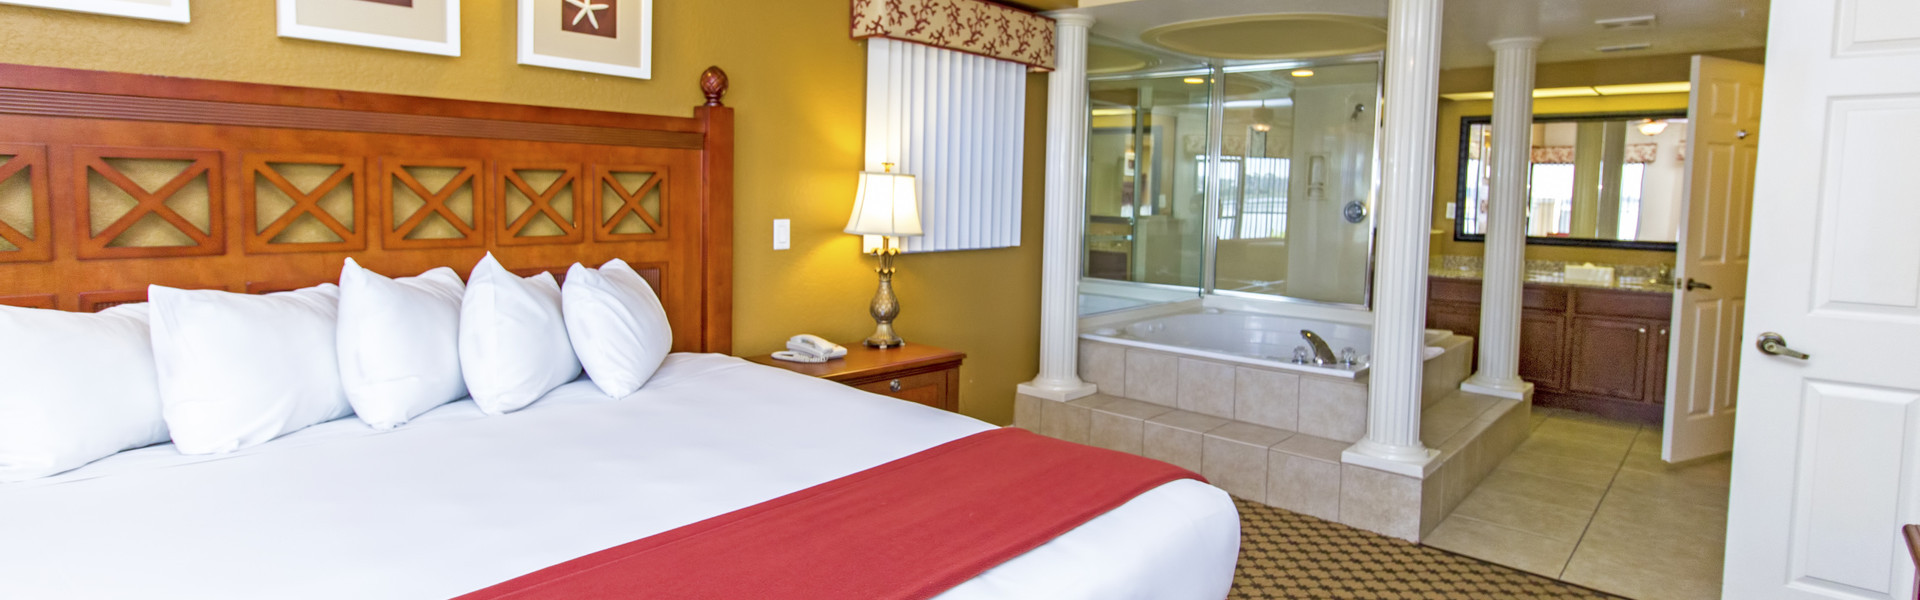 Two Bedroom Villa Westgate Lakes Resort Spa In Orlando